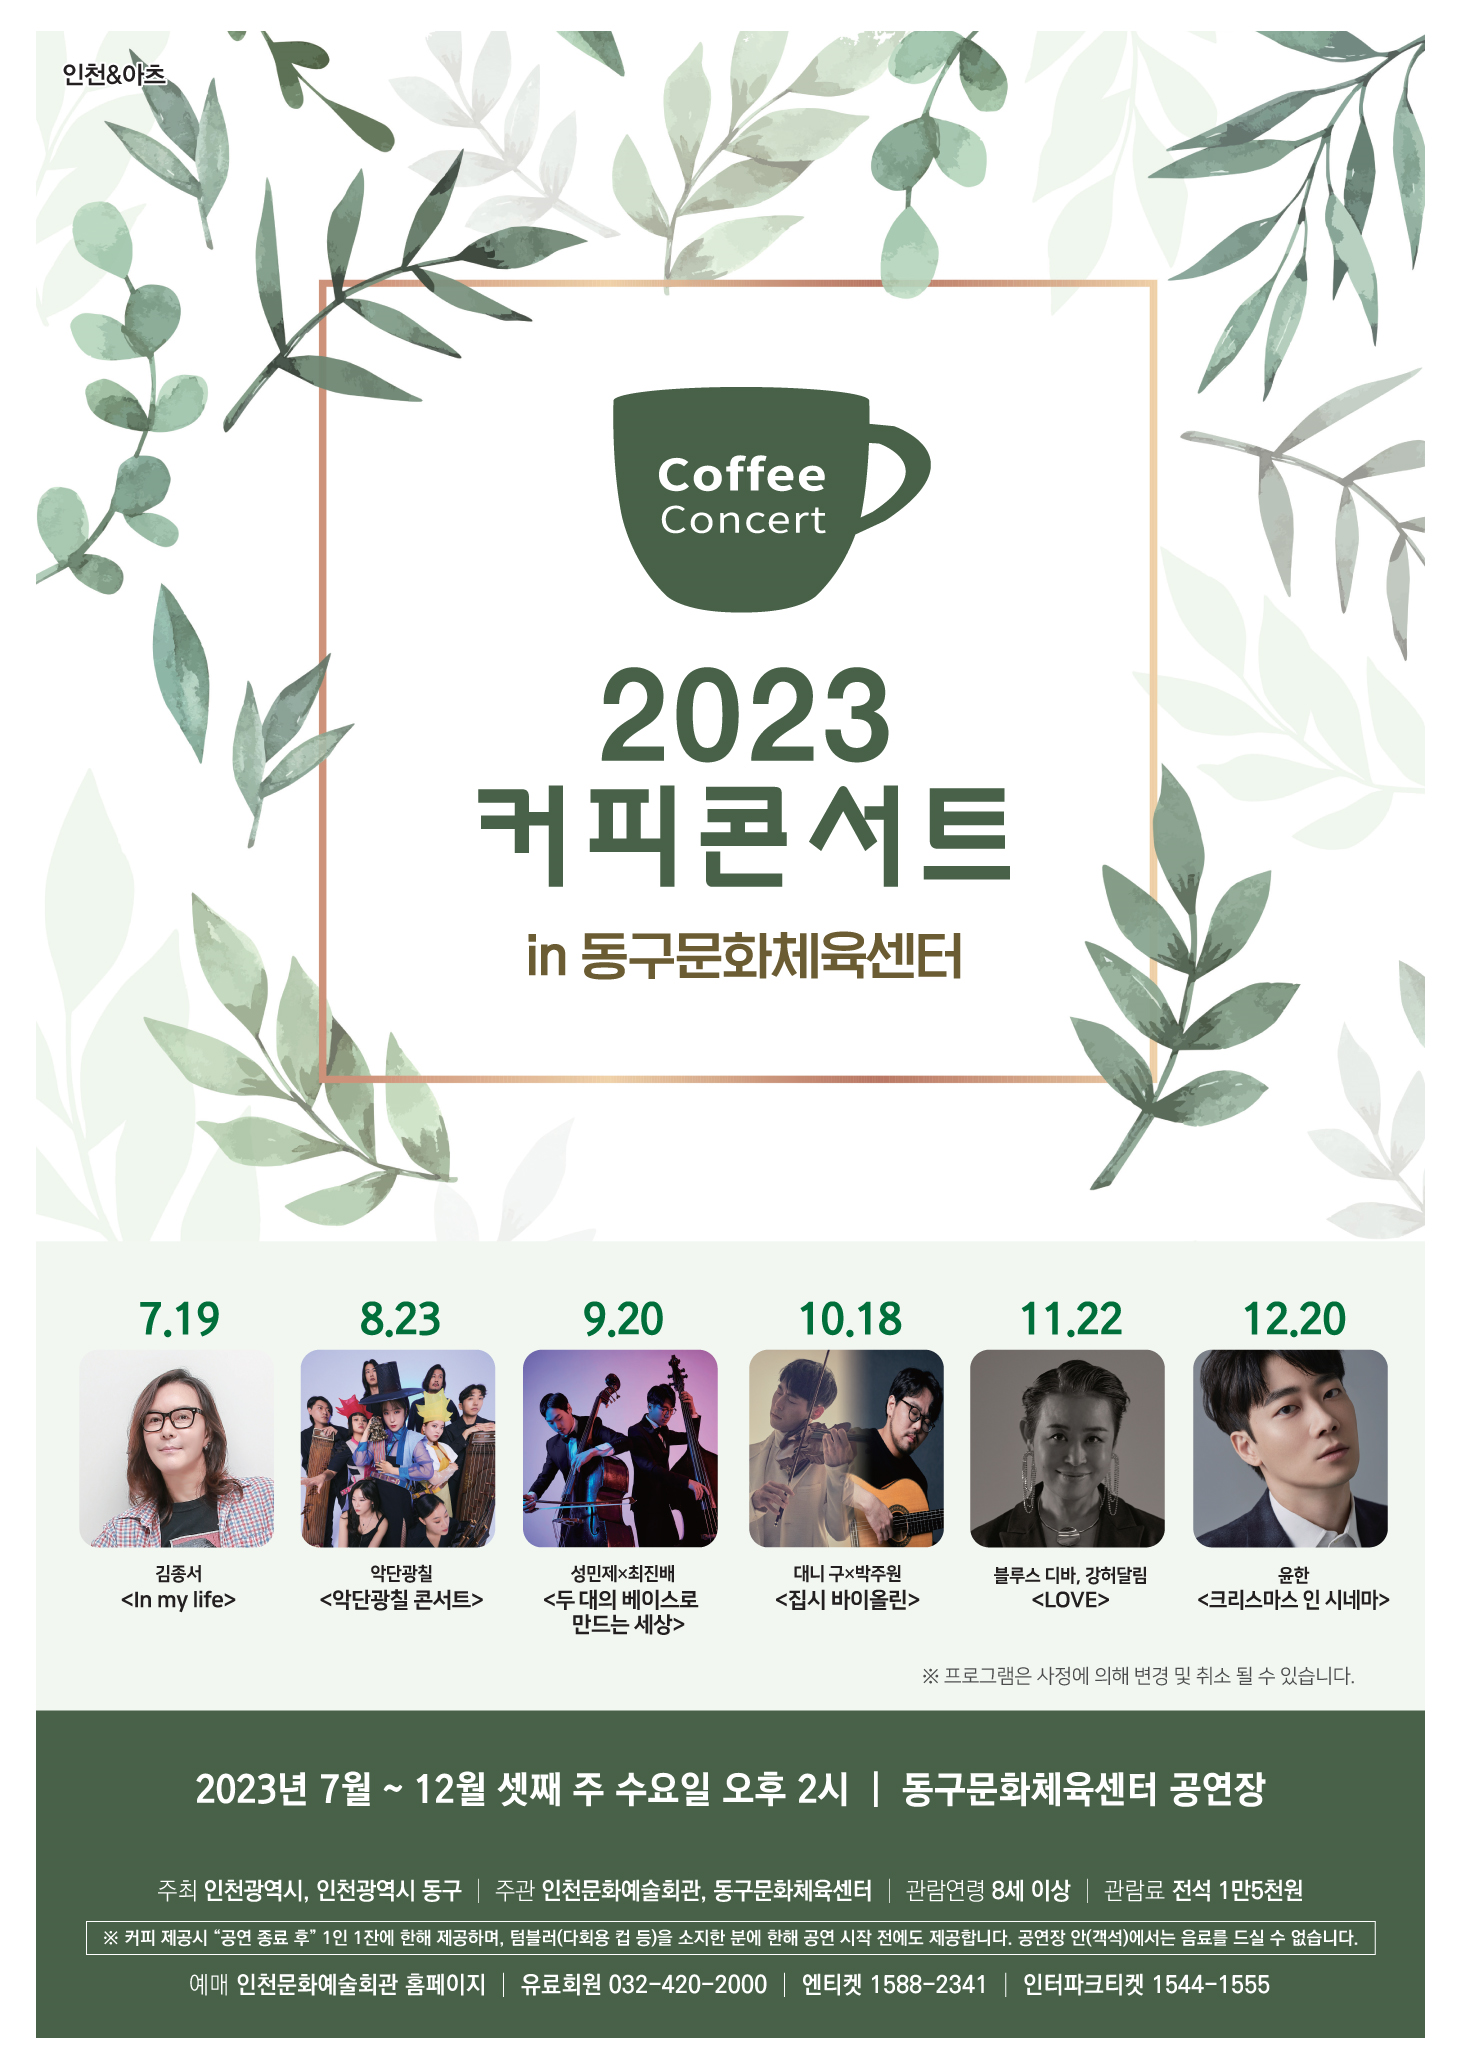 2023 커피콘서트 7~12월 라인업 발표 관련 이미지